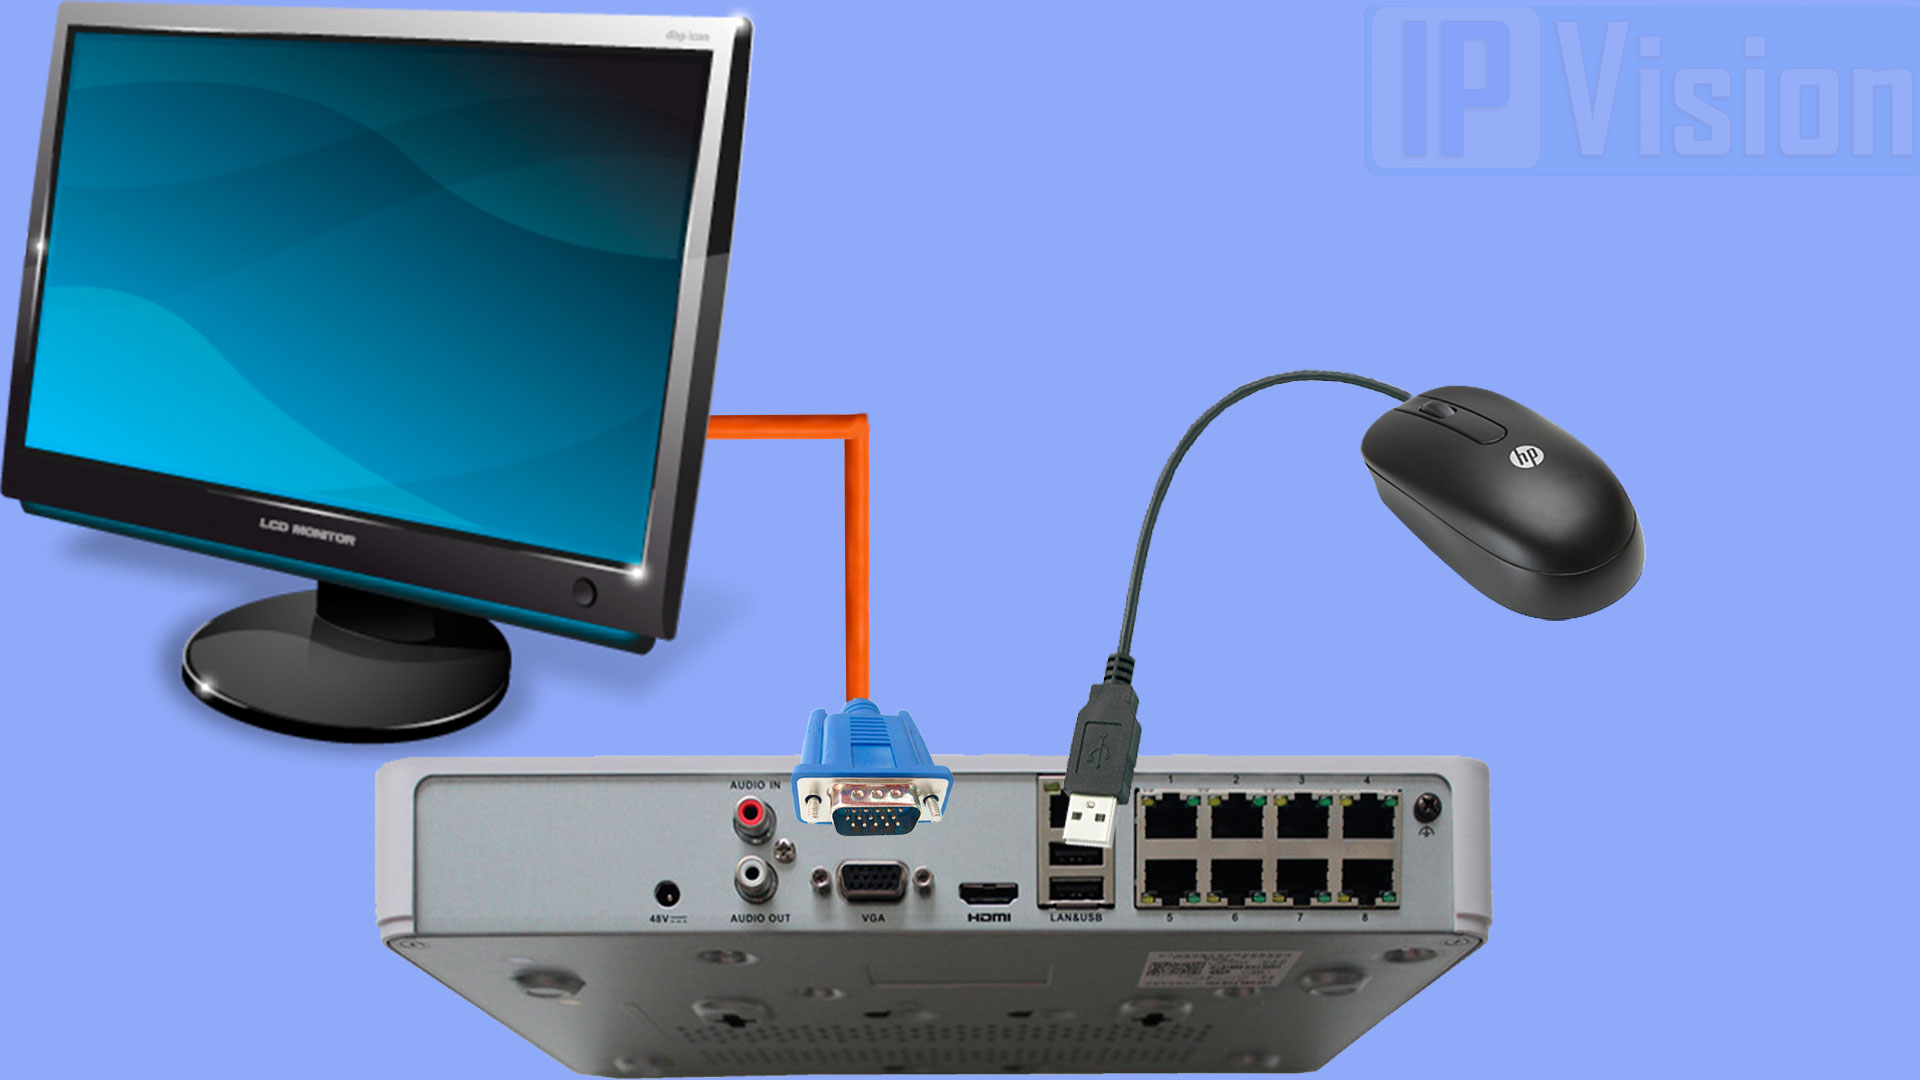 Регистратор через интернет. Hikvision видеорегистратор и монитор. Подключить камеру видеонаблюдения к монитору через VGA напрямую. Монитор для видеонаблюдения. Регистратор с монитором для видеонаблюдения.